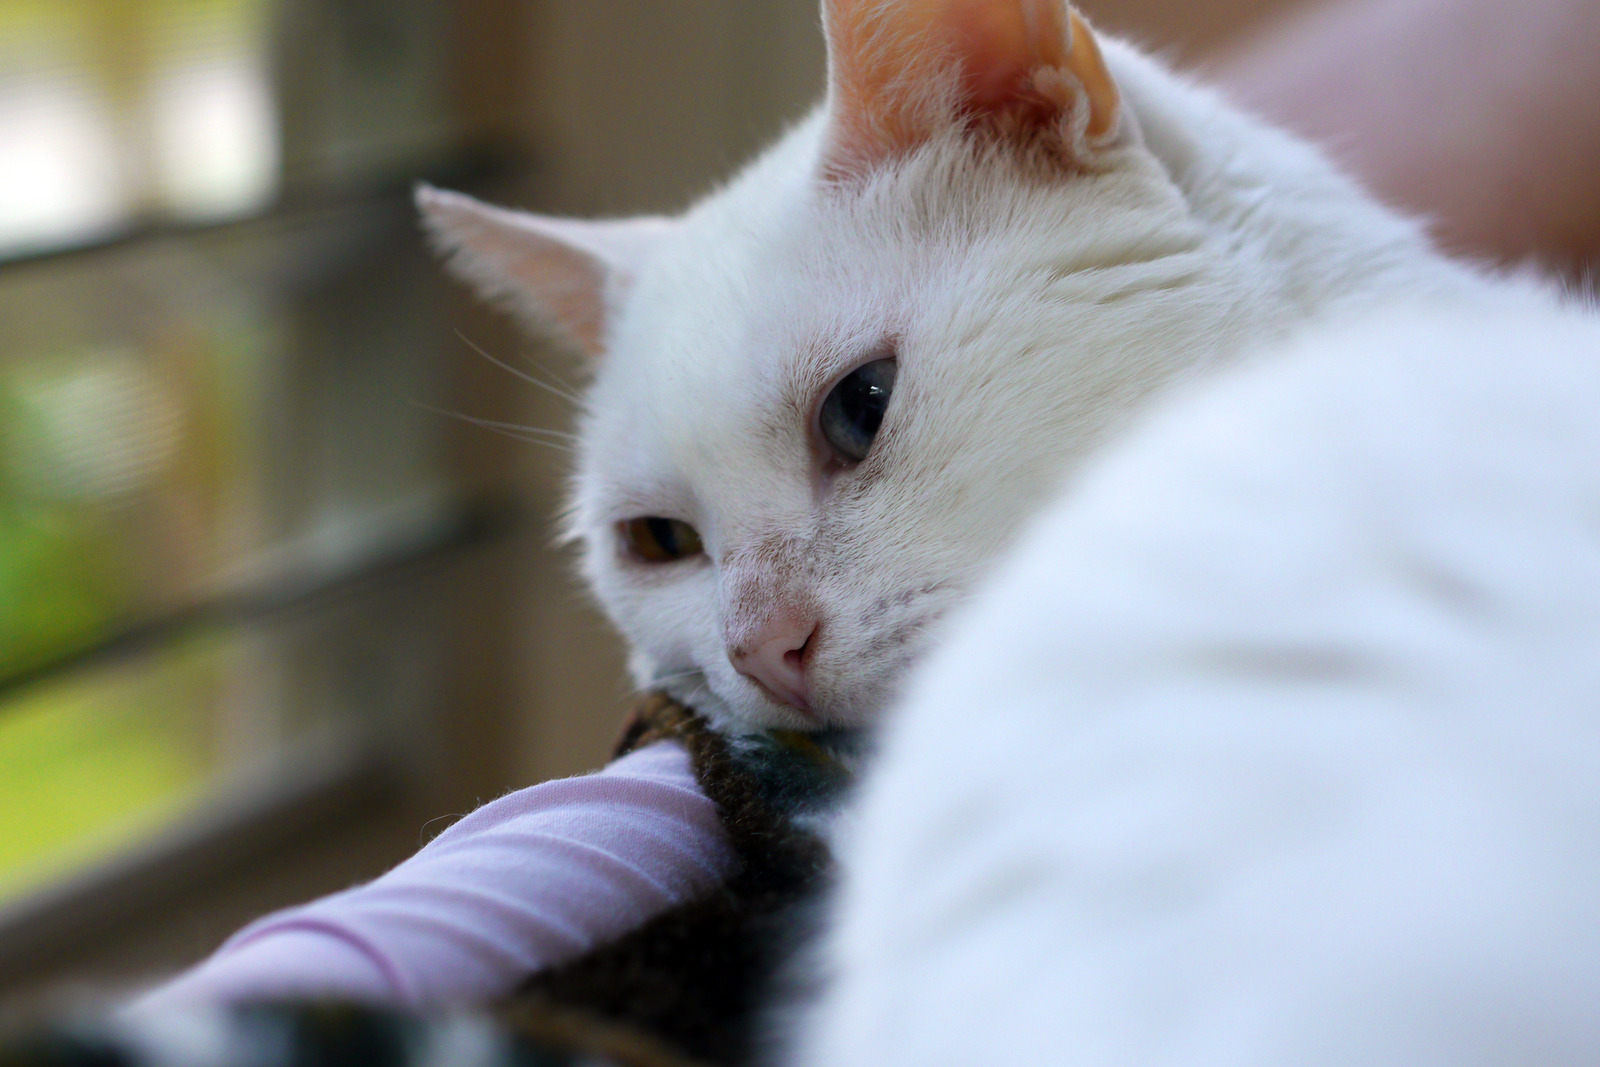 Witte kat met huidproblemen kijkt verdrietig